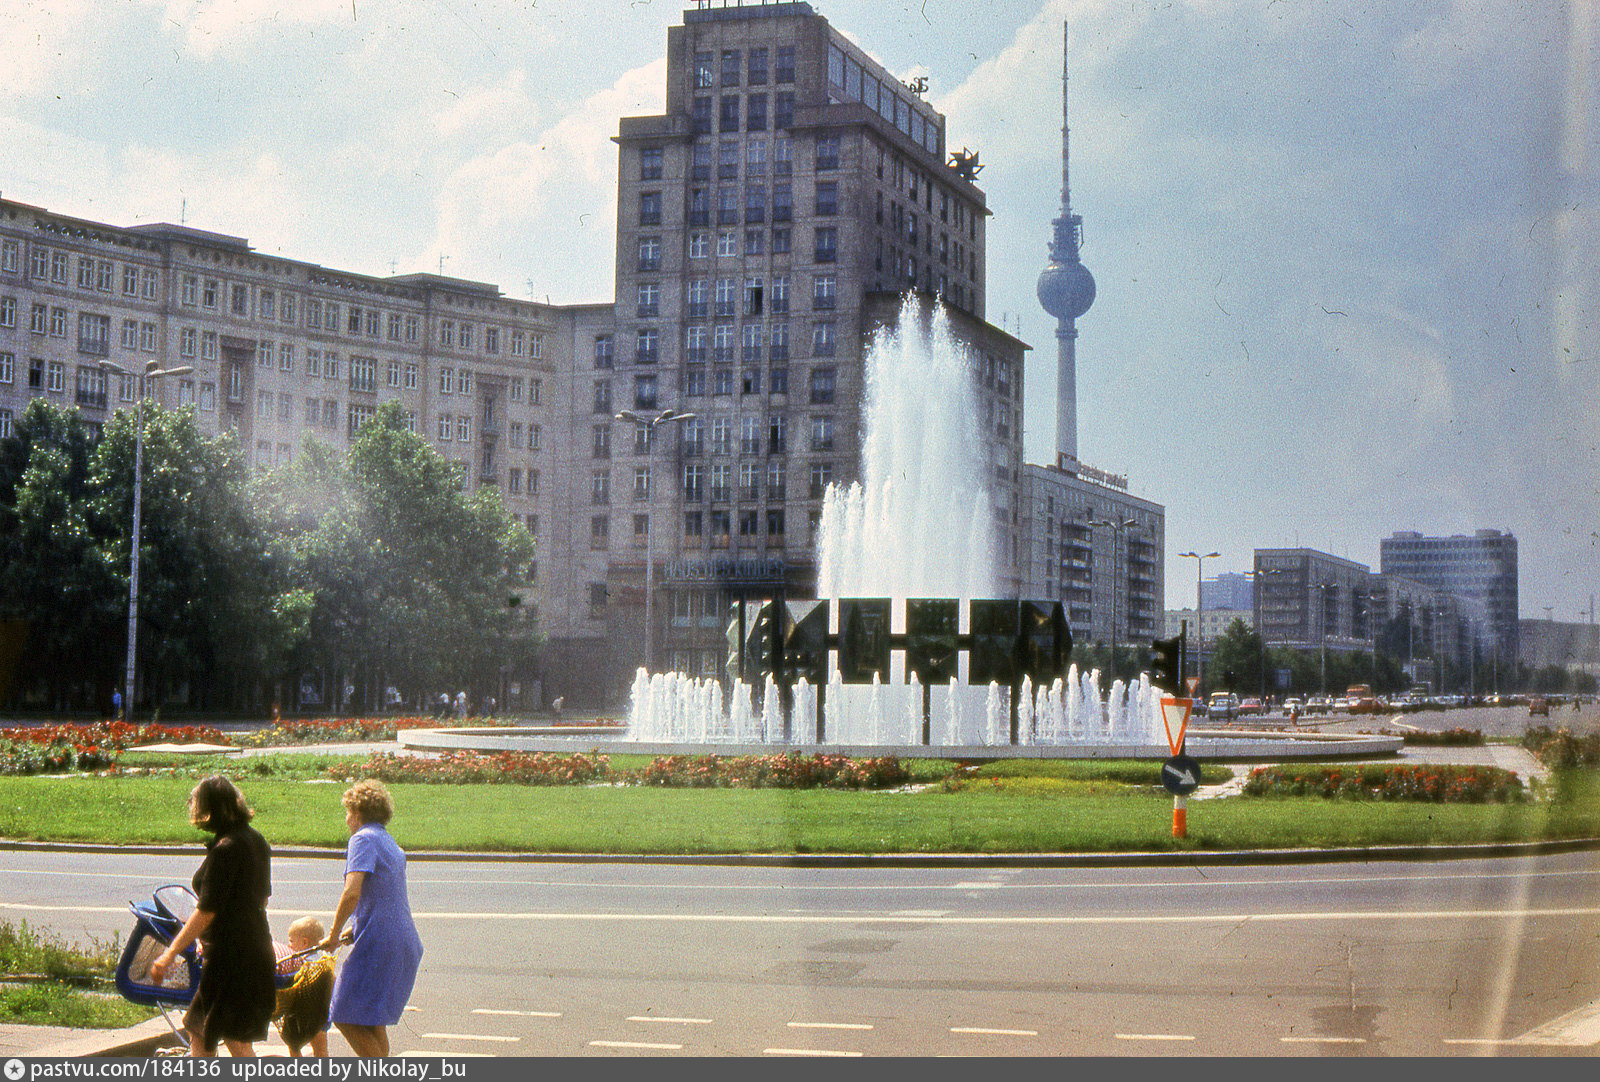 восточный берлин 1960 год